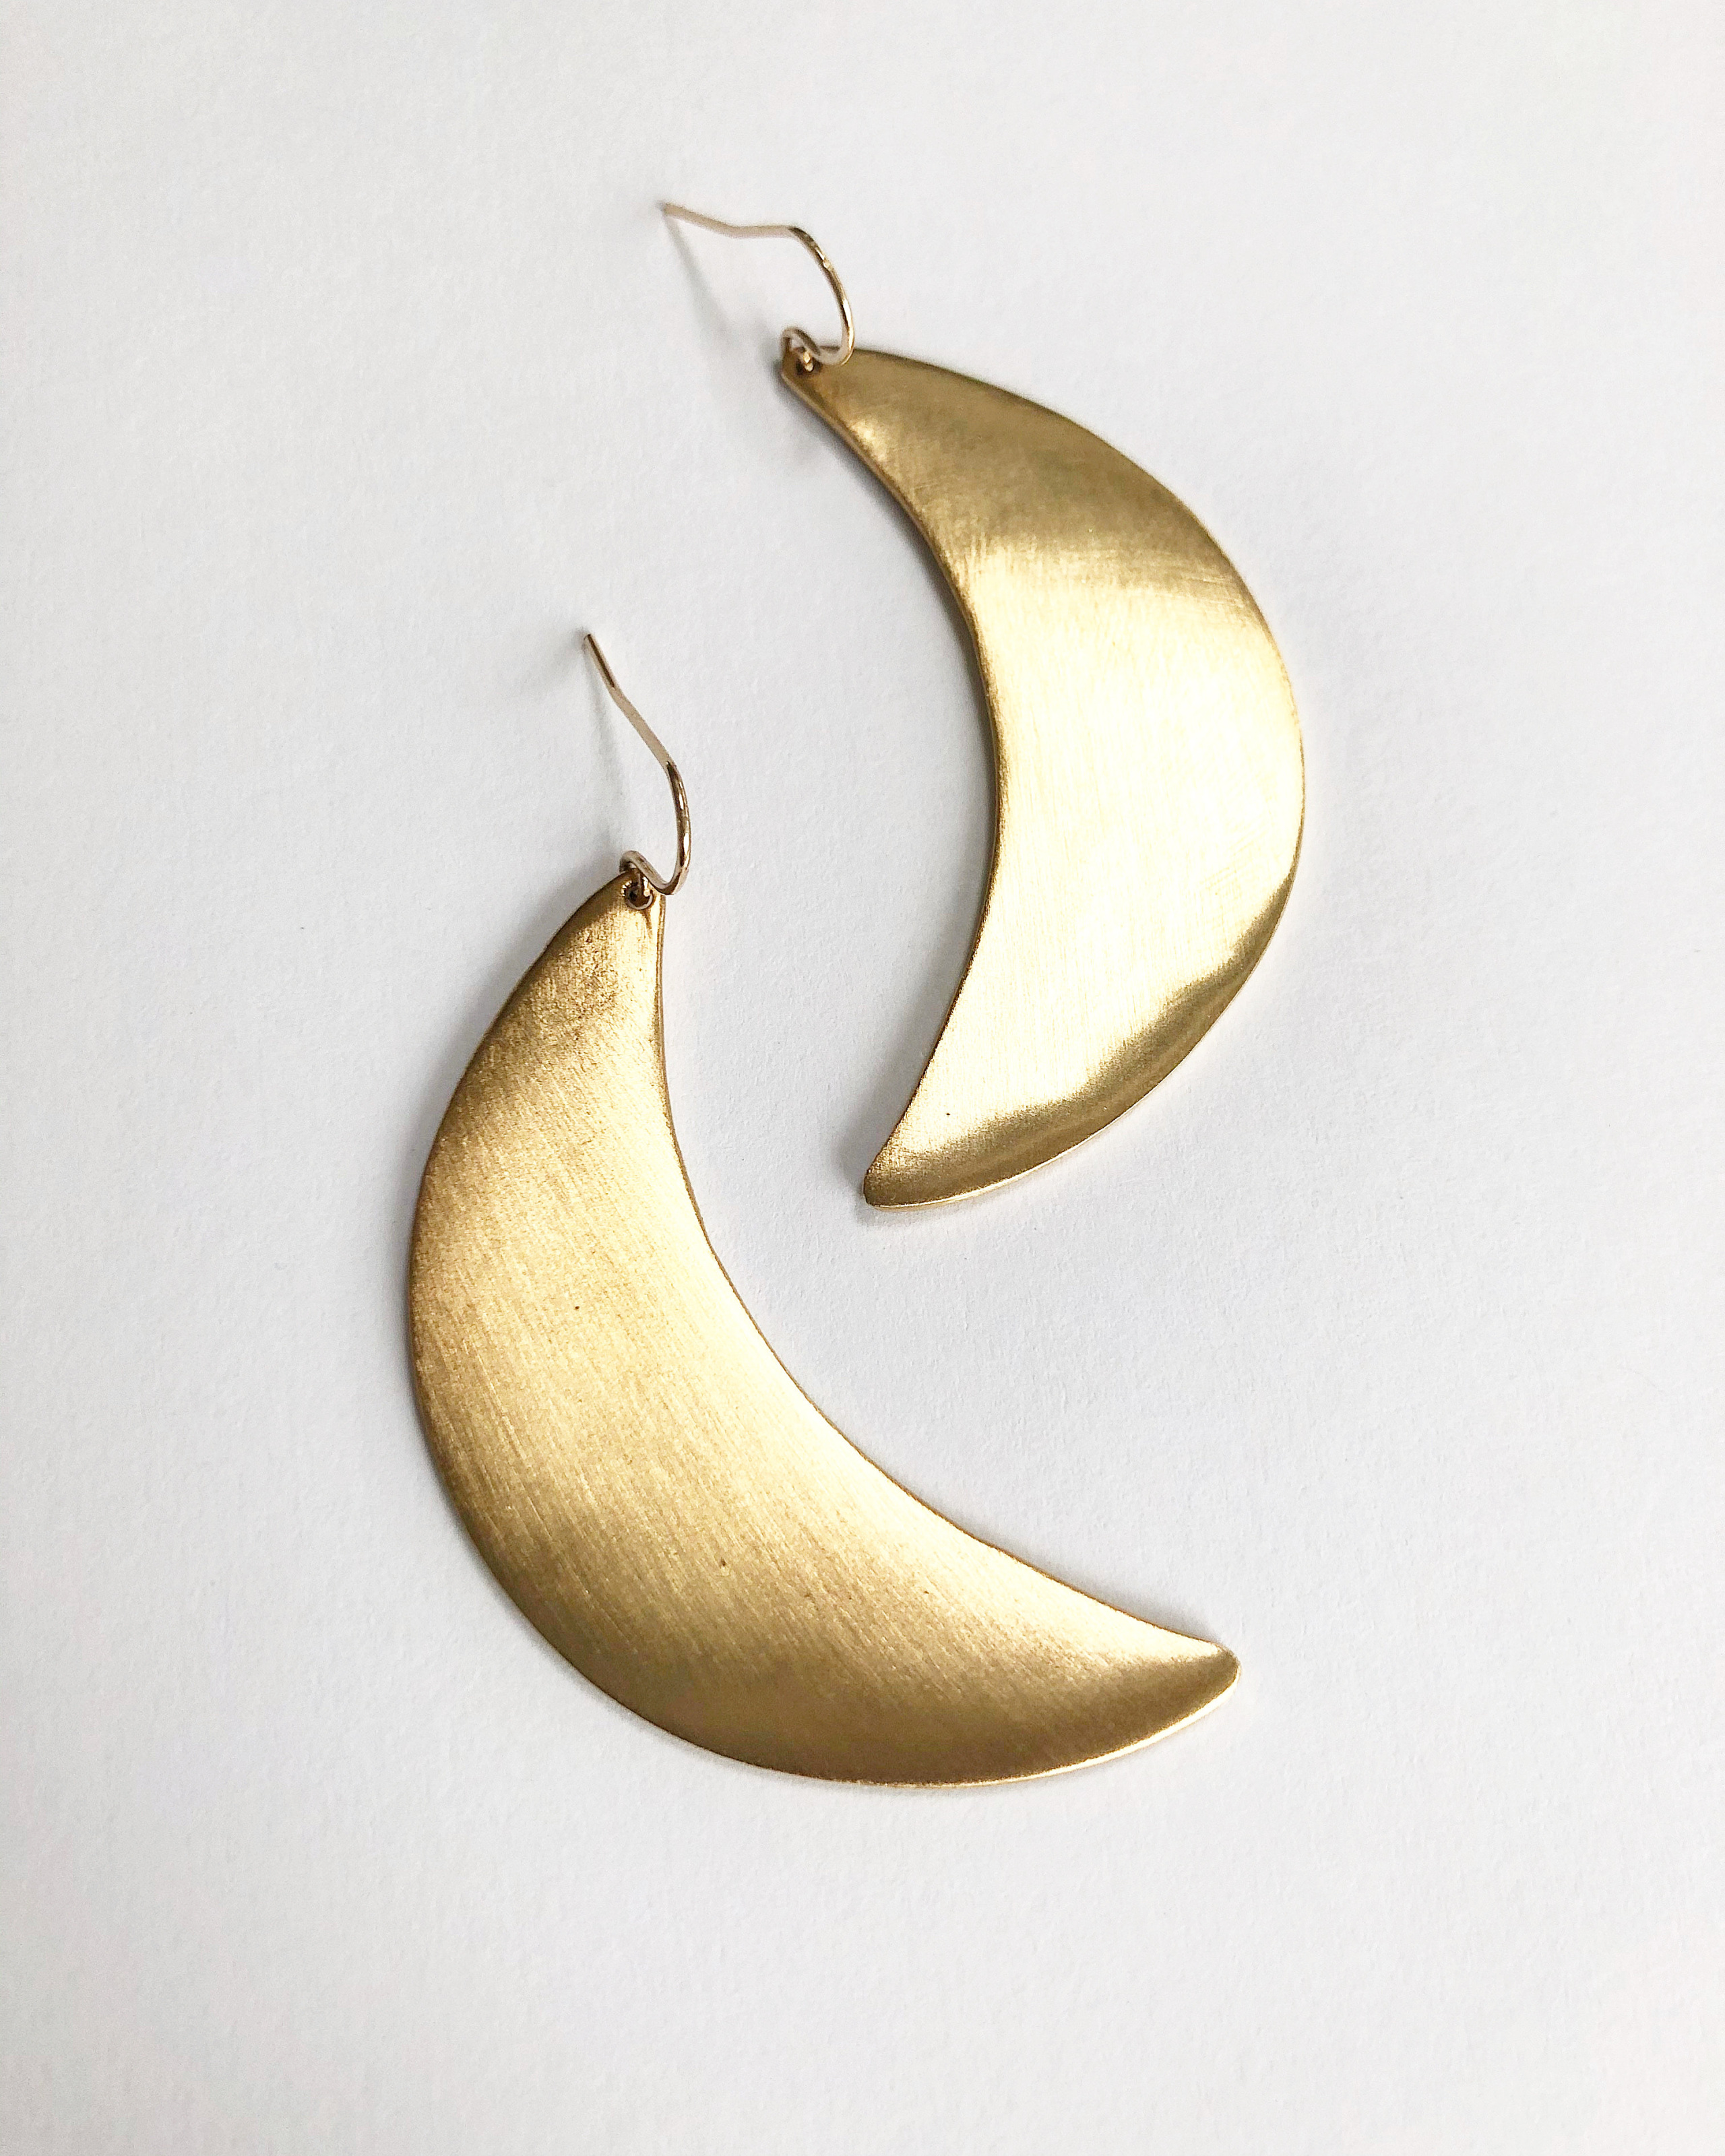 The Big Golden Crescent Moon Earrings